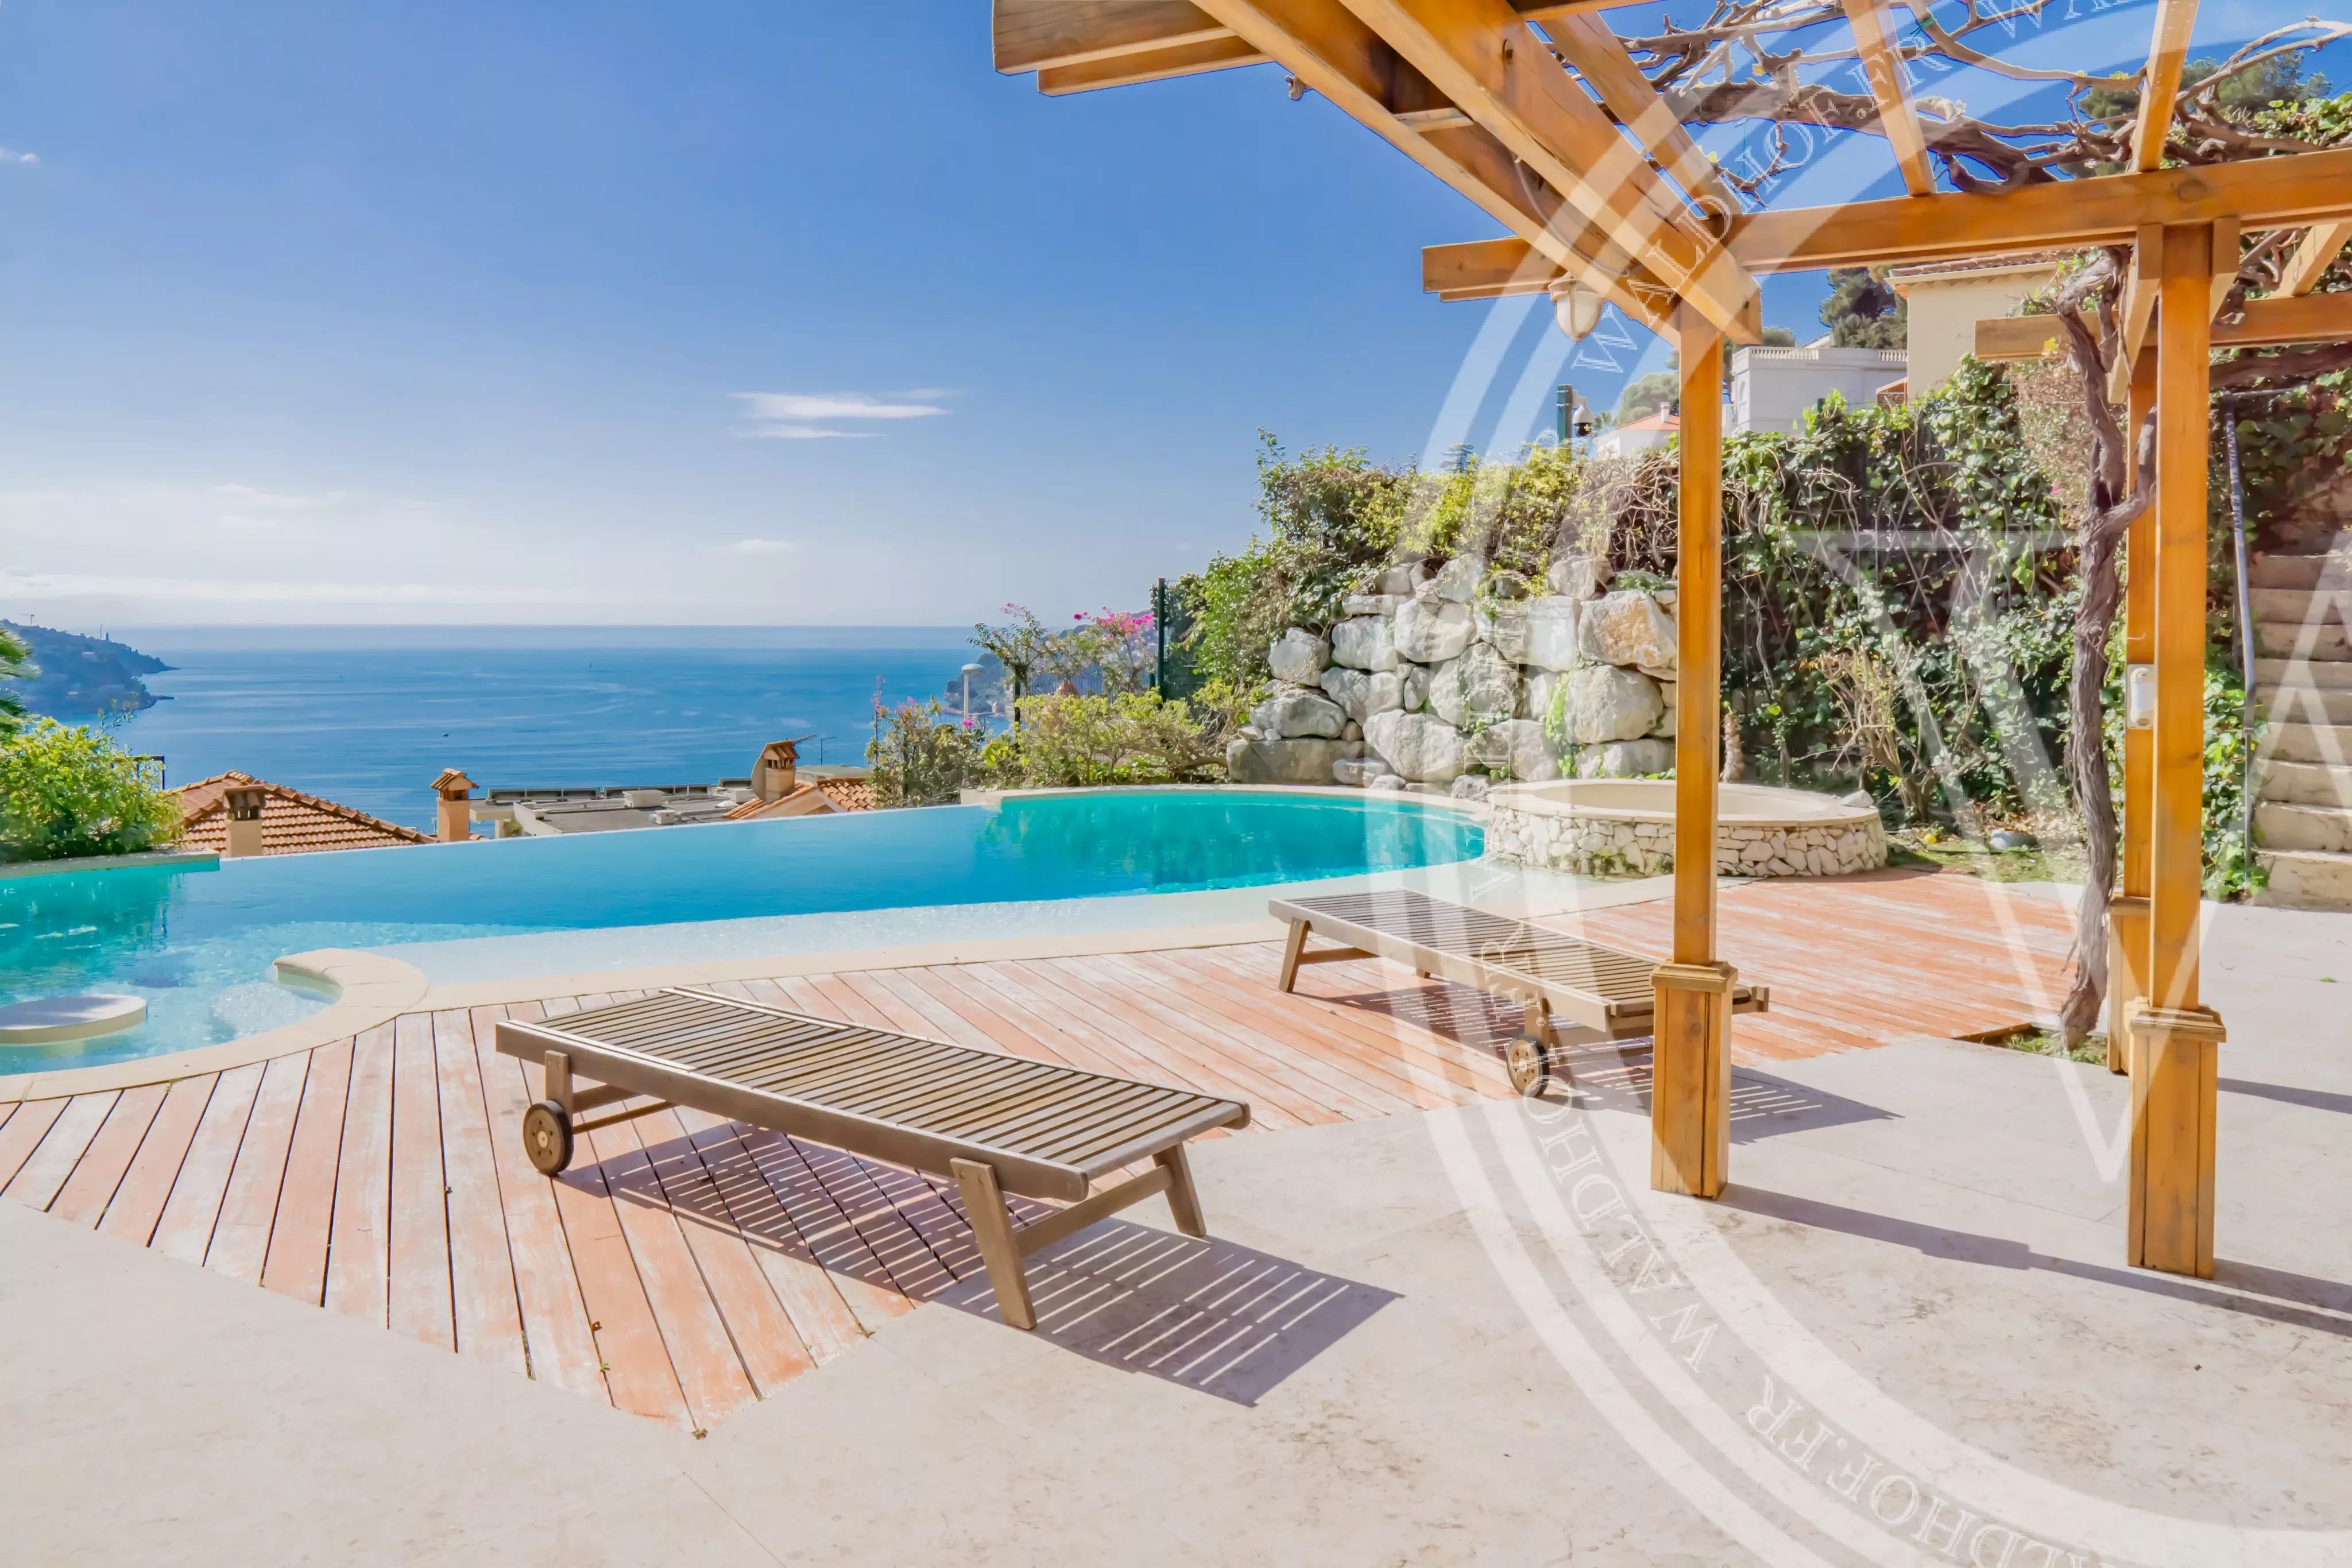 Villa "Beau Regard" avec maison d'hôtes à Villefranche avec vue sur la mer et le Cap Ferrat.